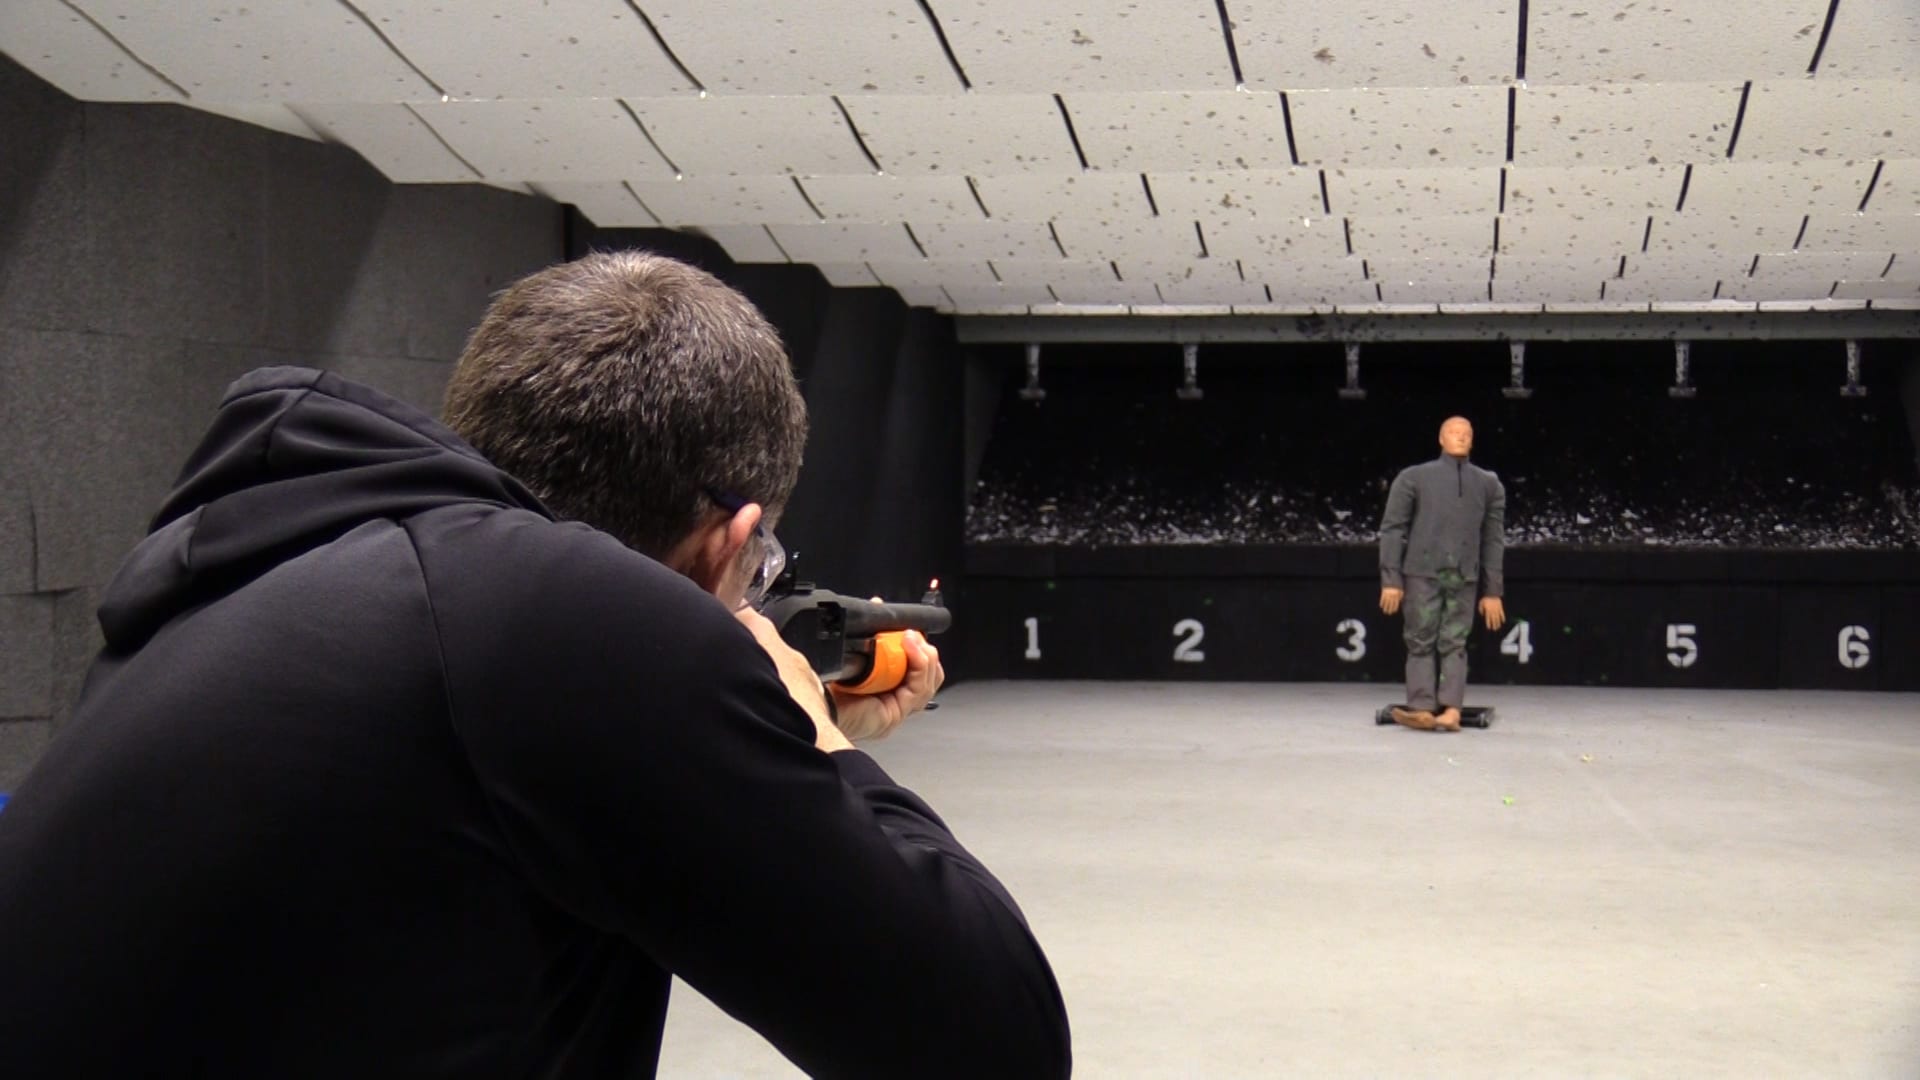 Man shooting in gun range.